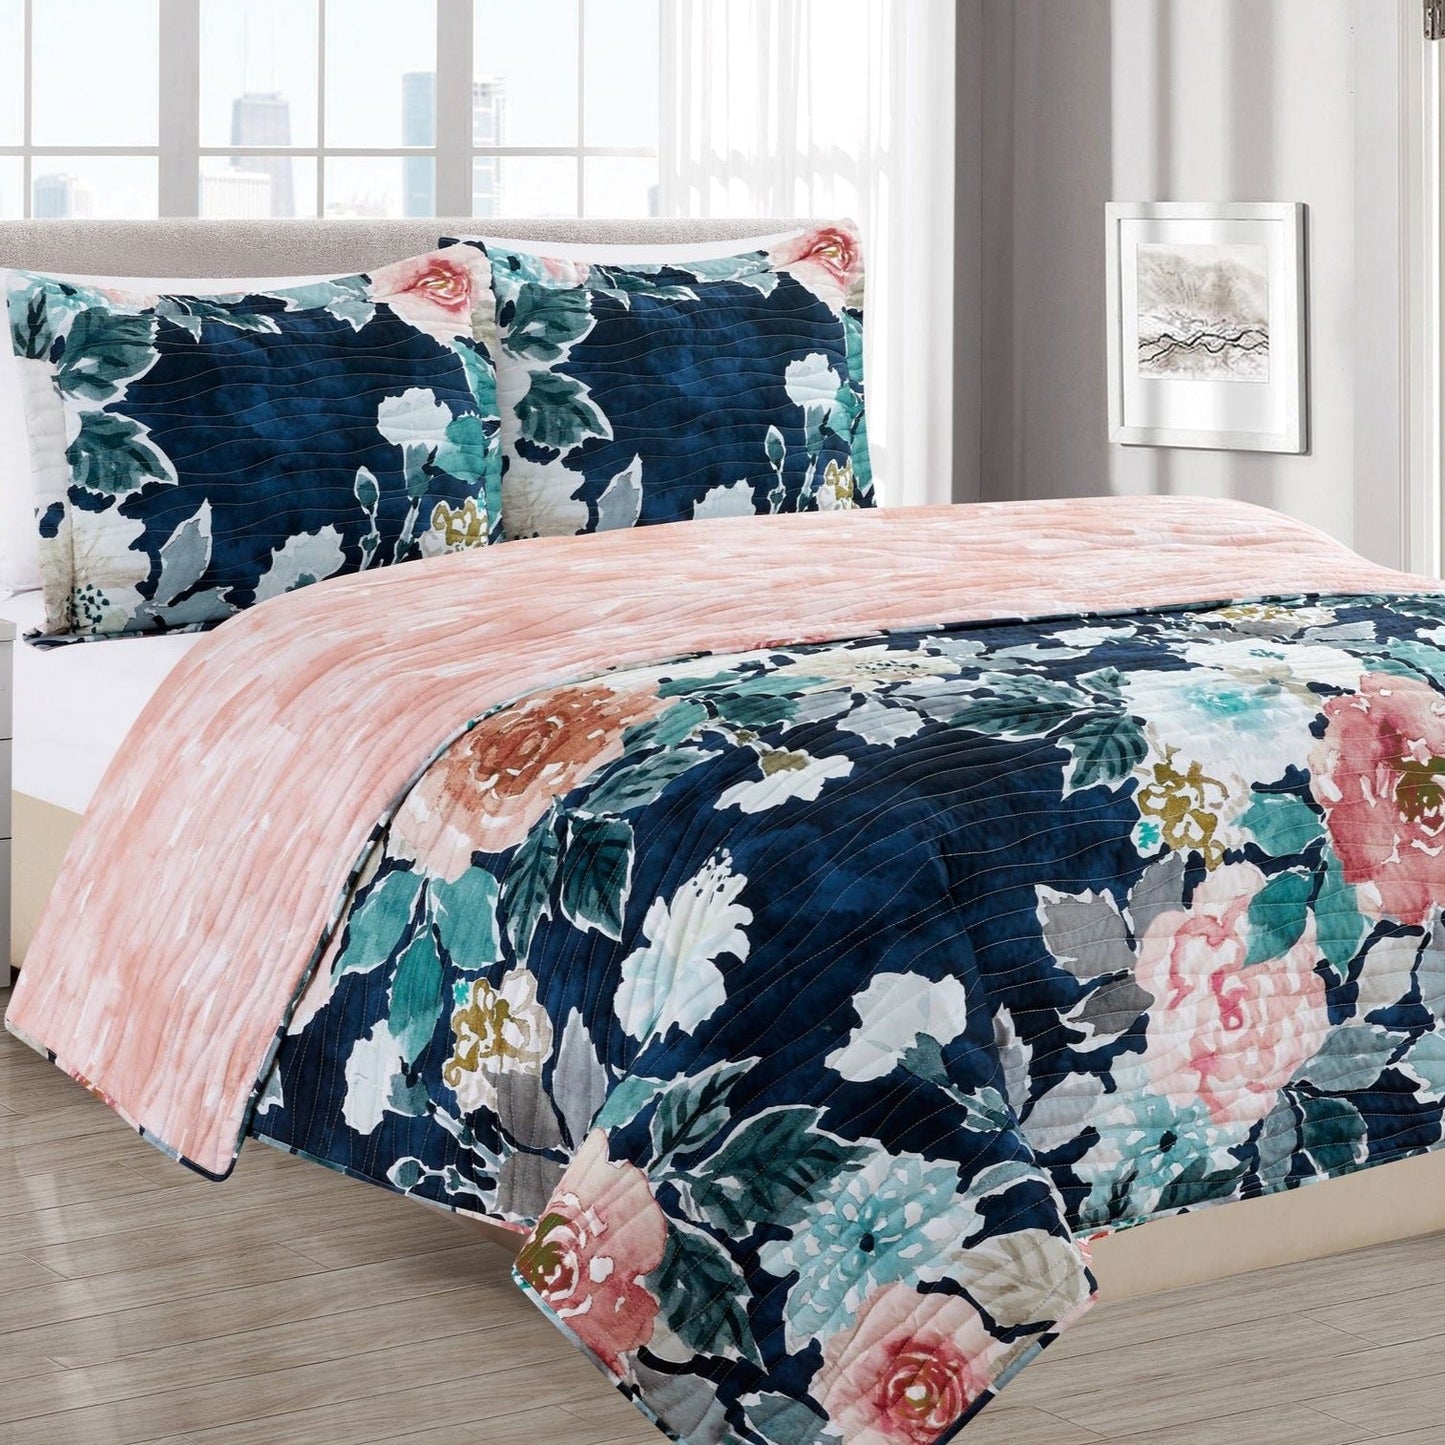 Banked Floral Quilt Sets